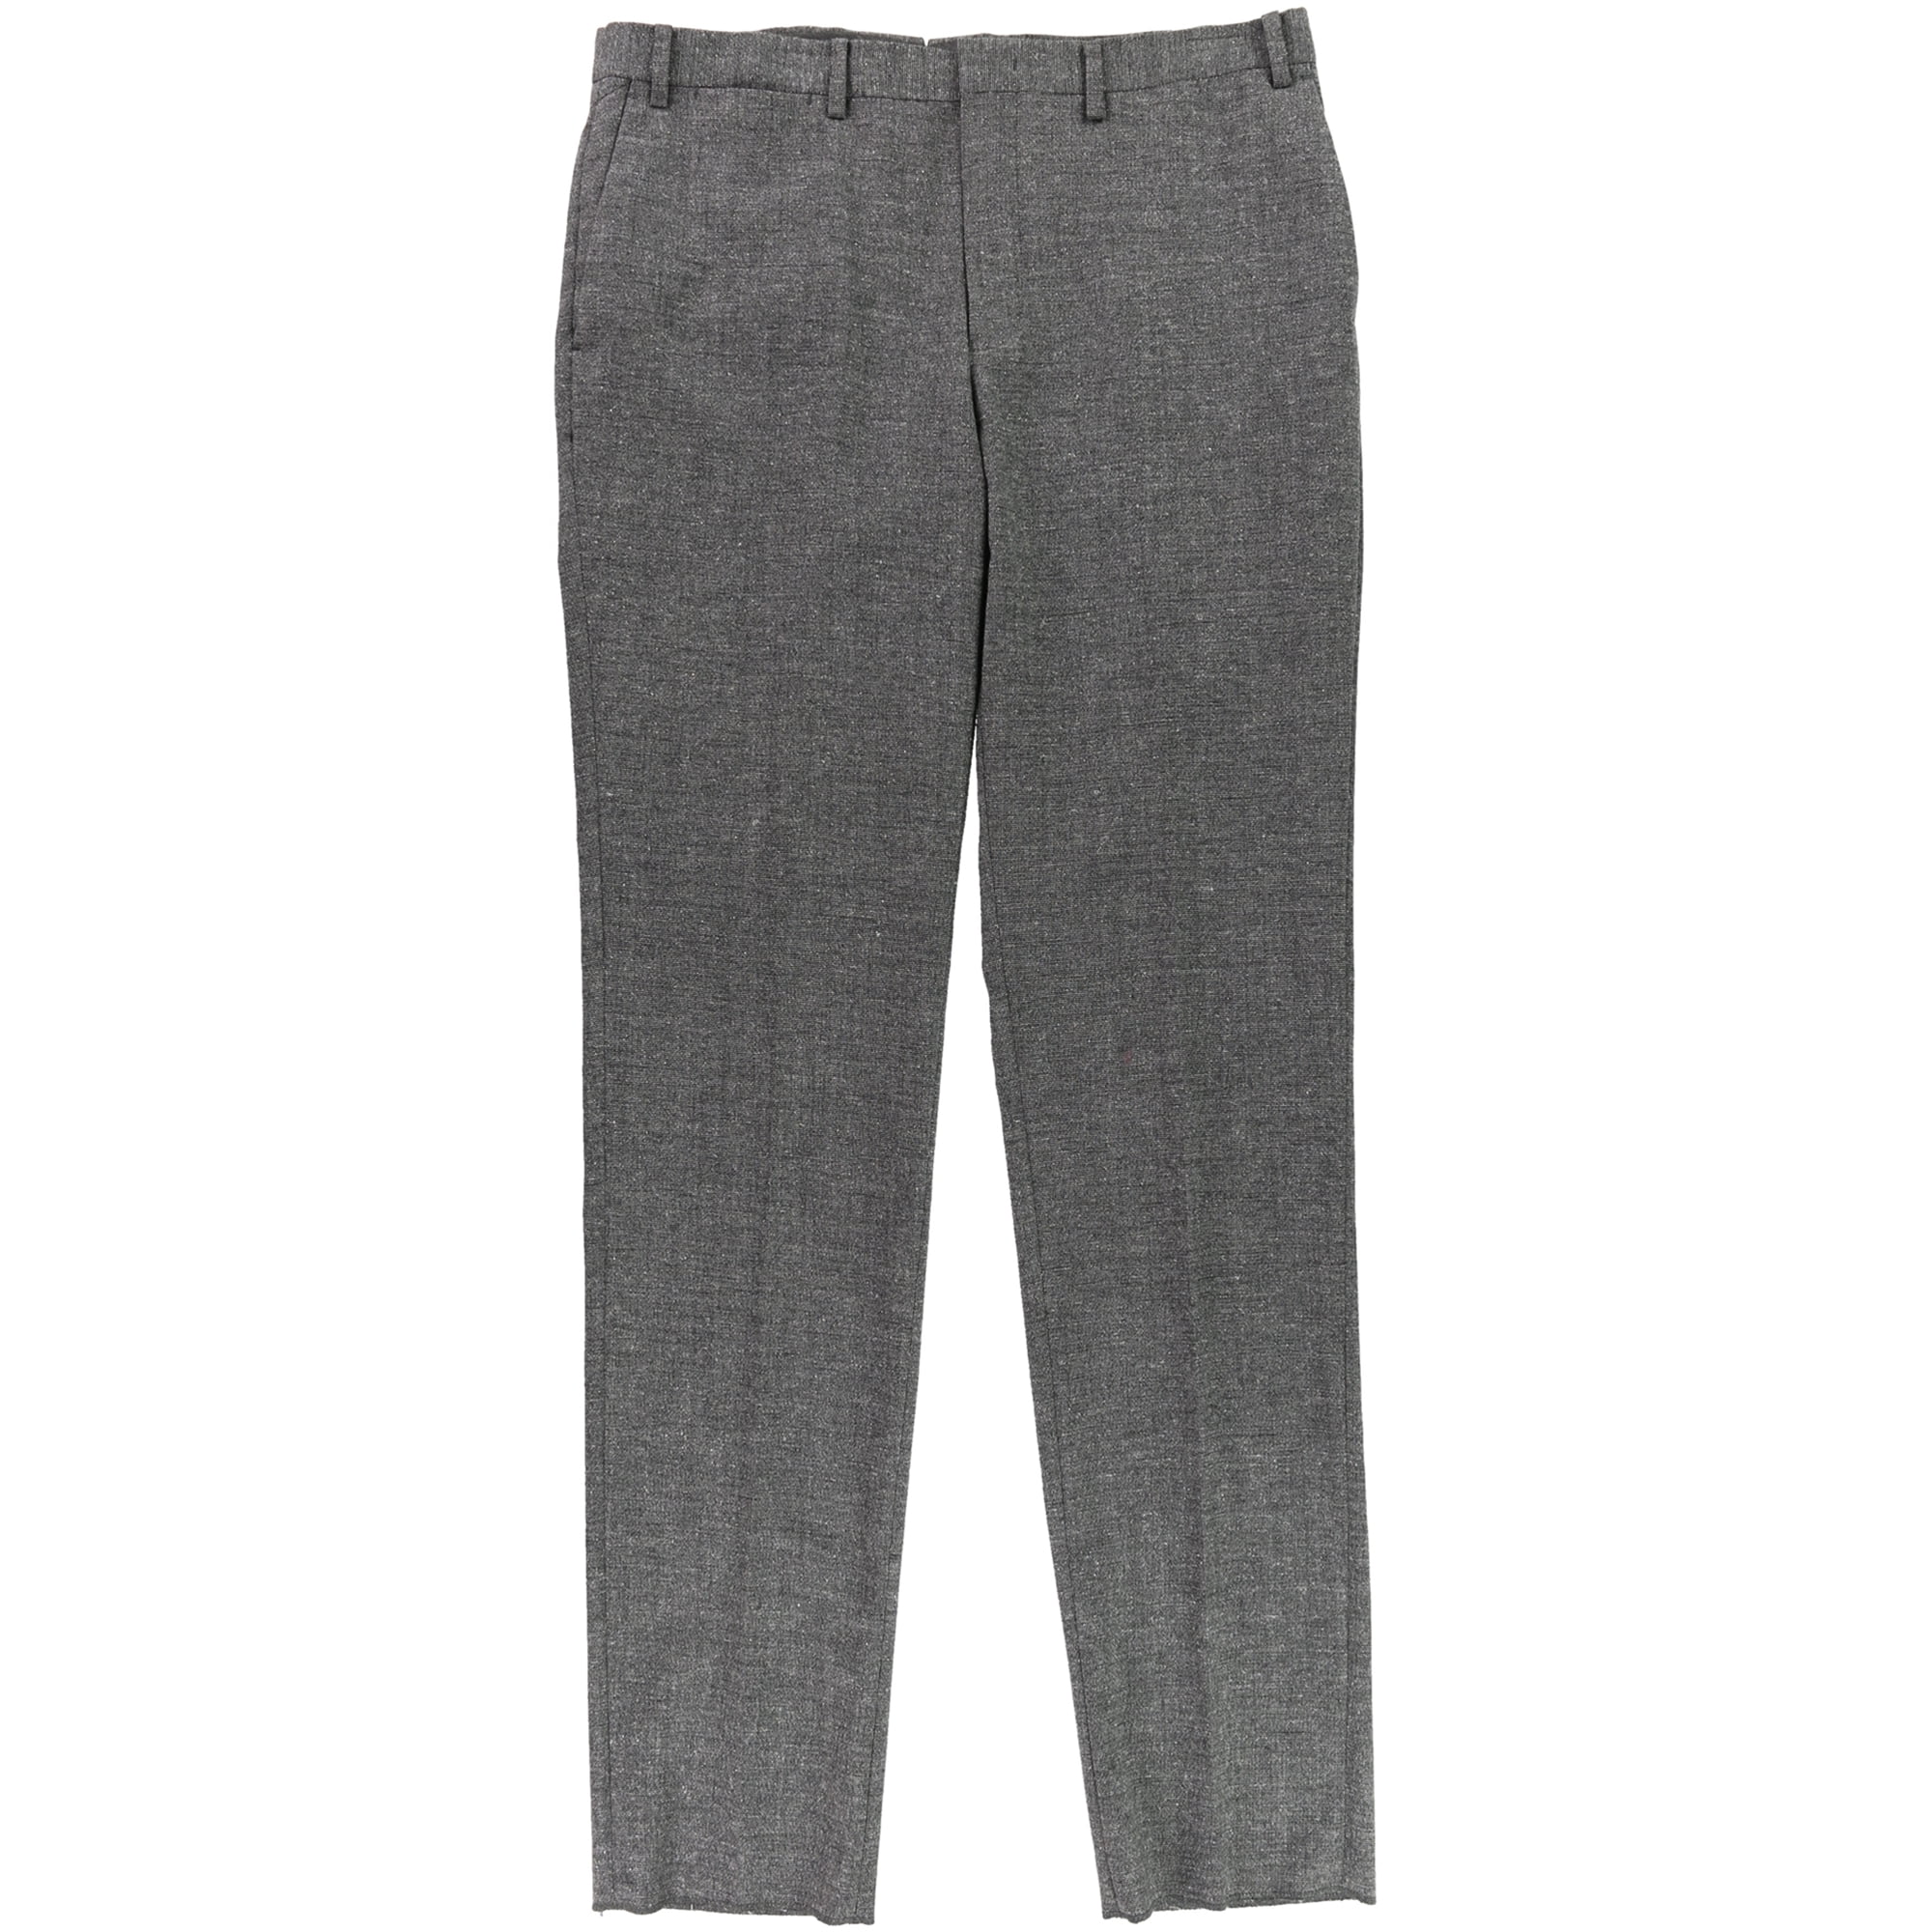 DKNY Mens Marled Dress Pants Slacks, Grey, 35W x 36L - Walmart.com